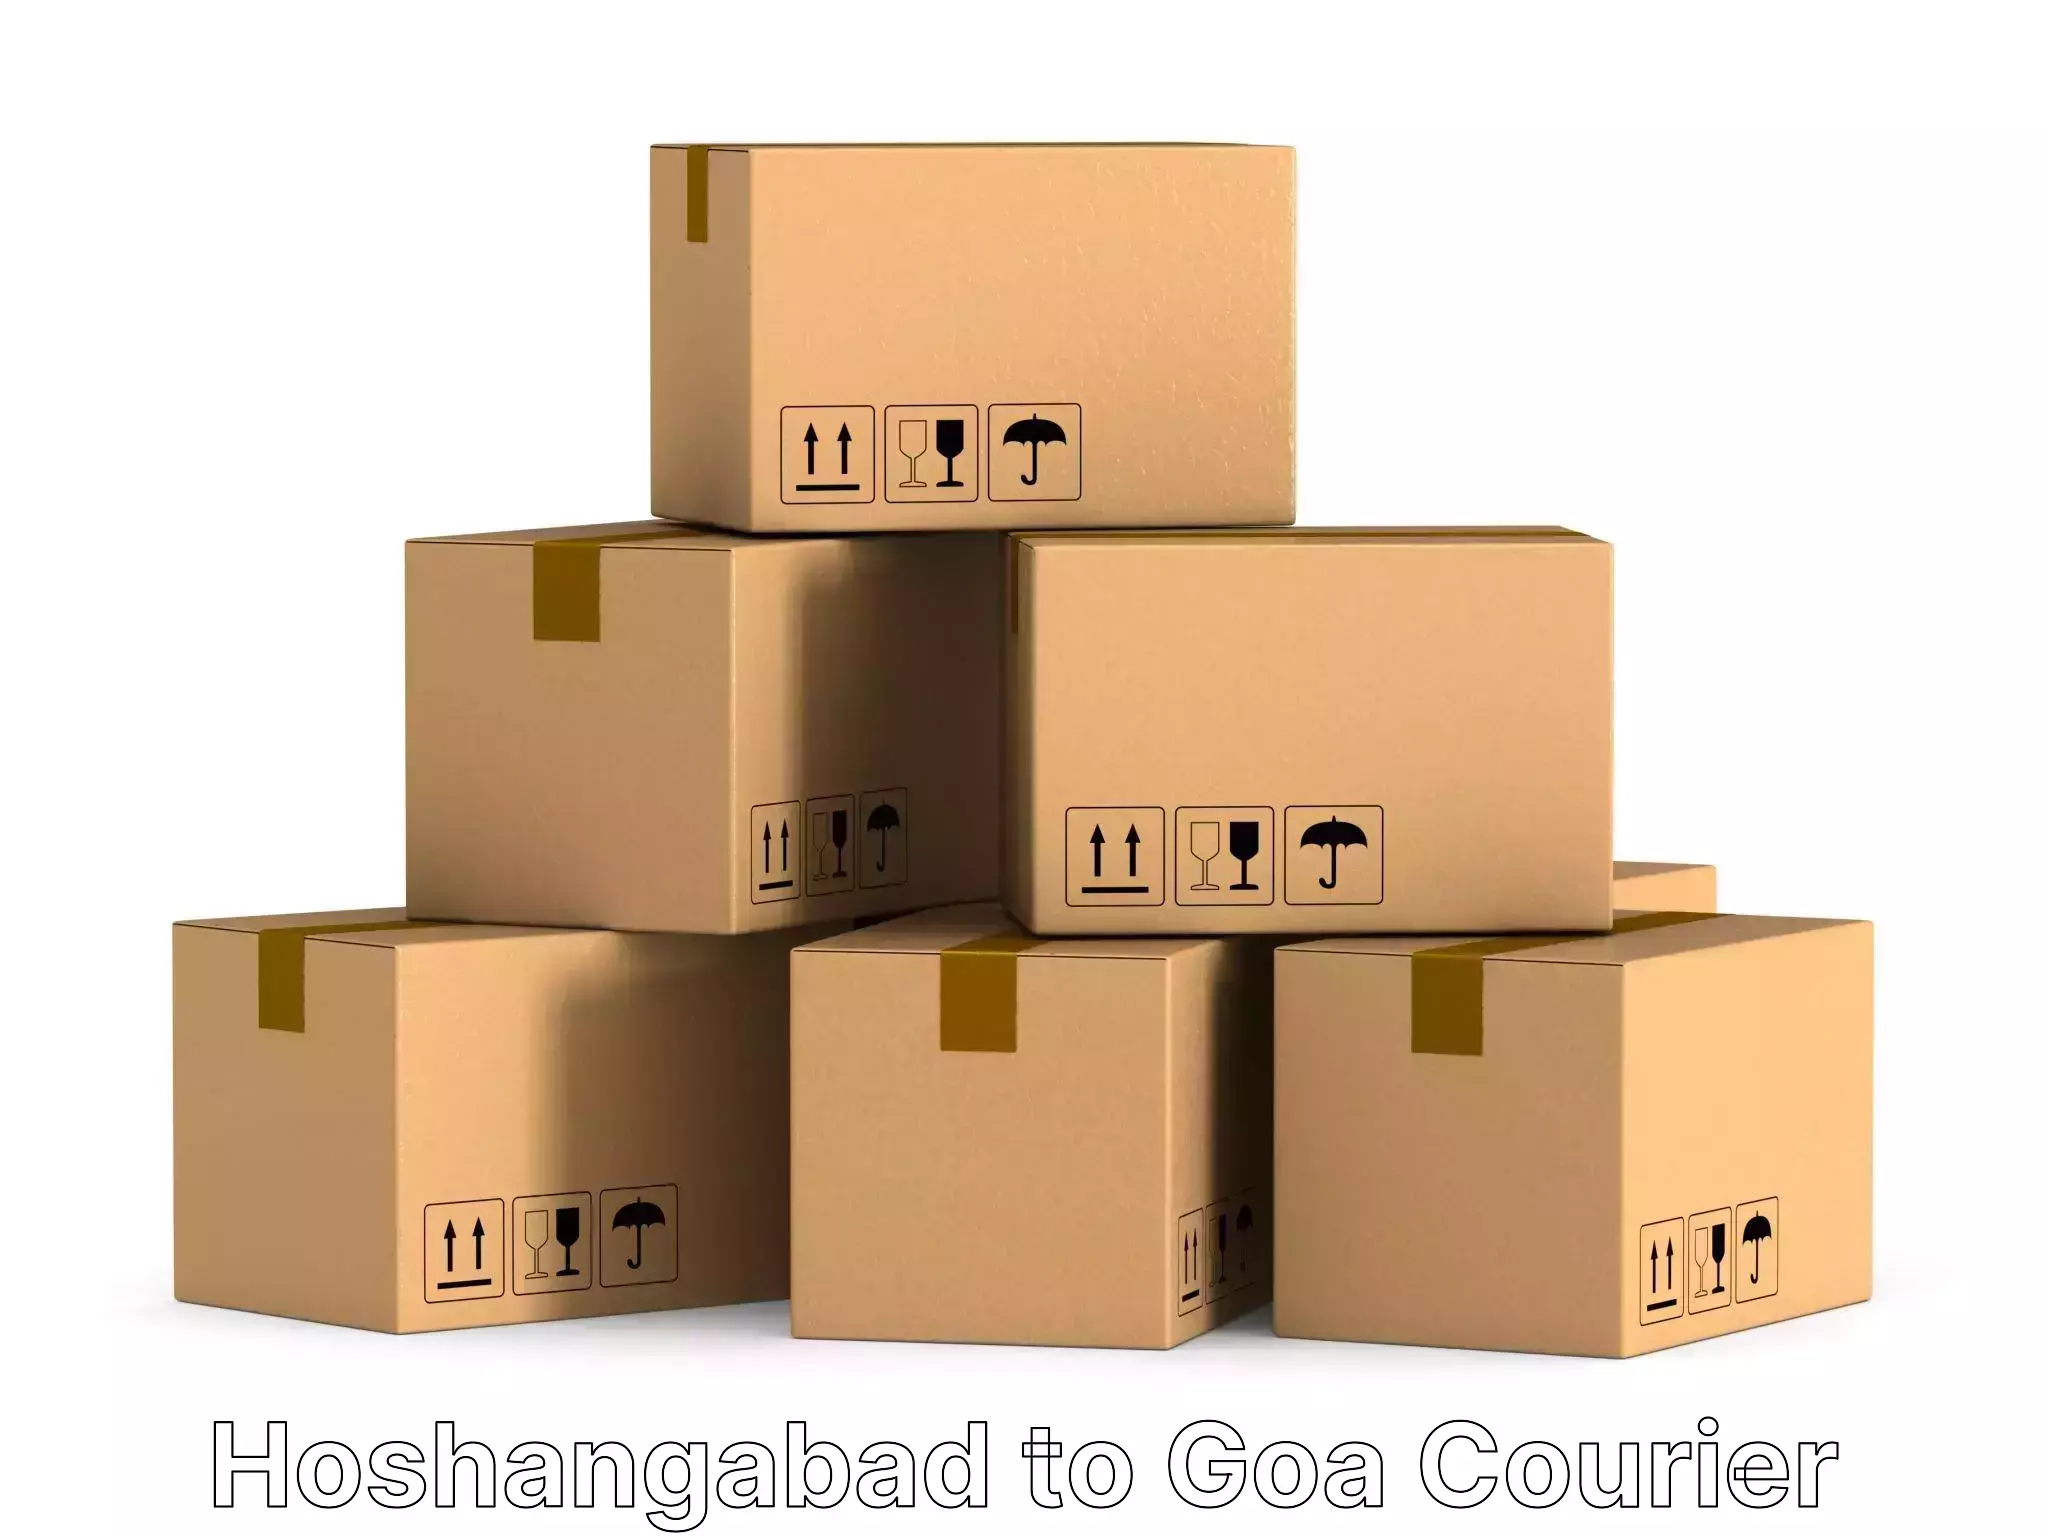 Furniture moving experts Hoshangabad to Goa